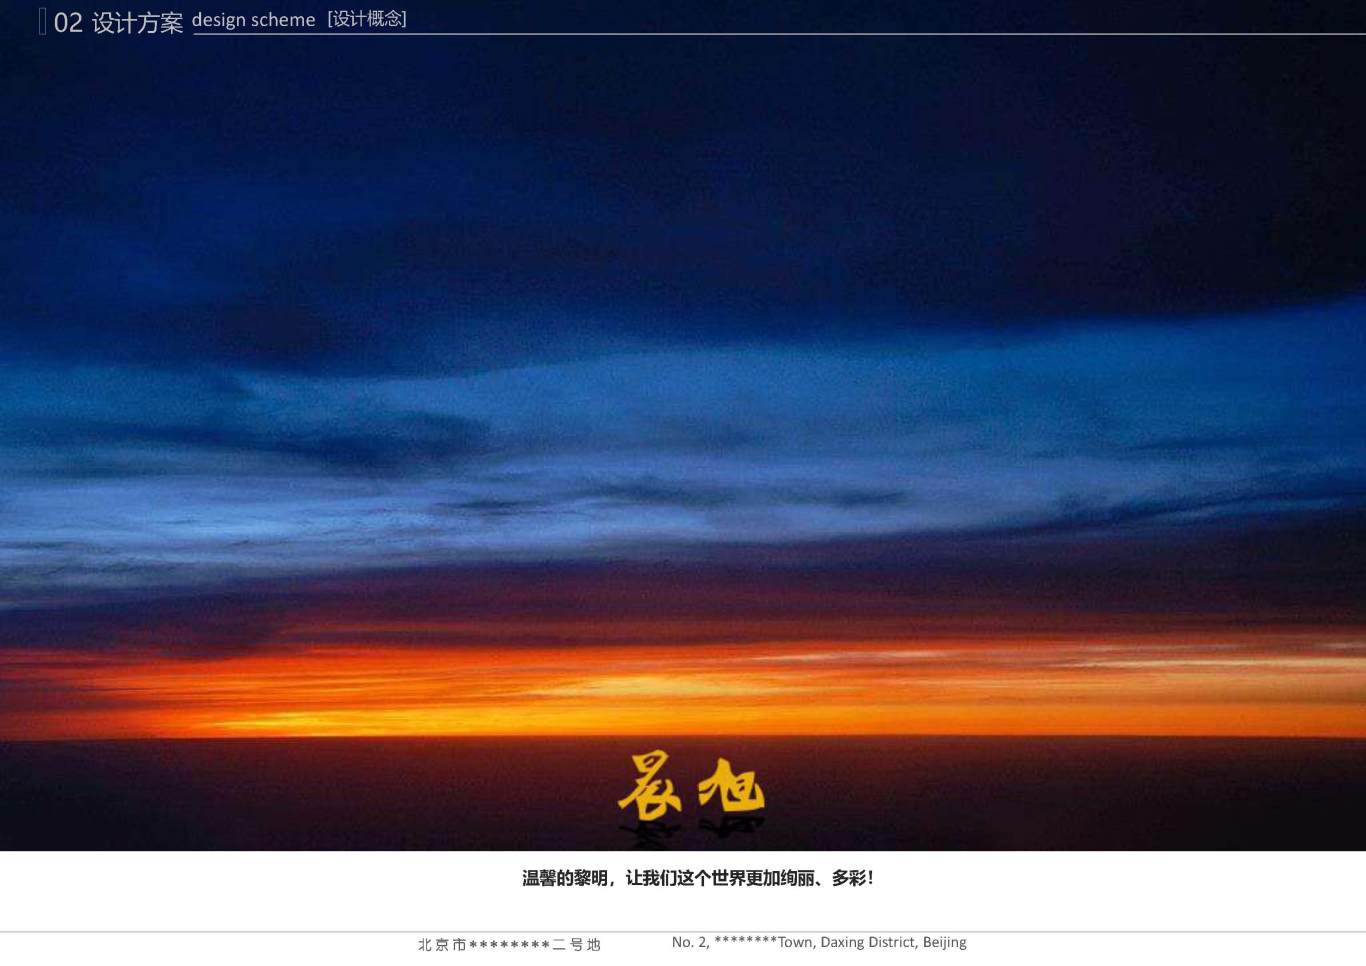 北京市大興區*****二號地夜景照明項目案例圖16